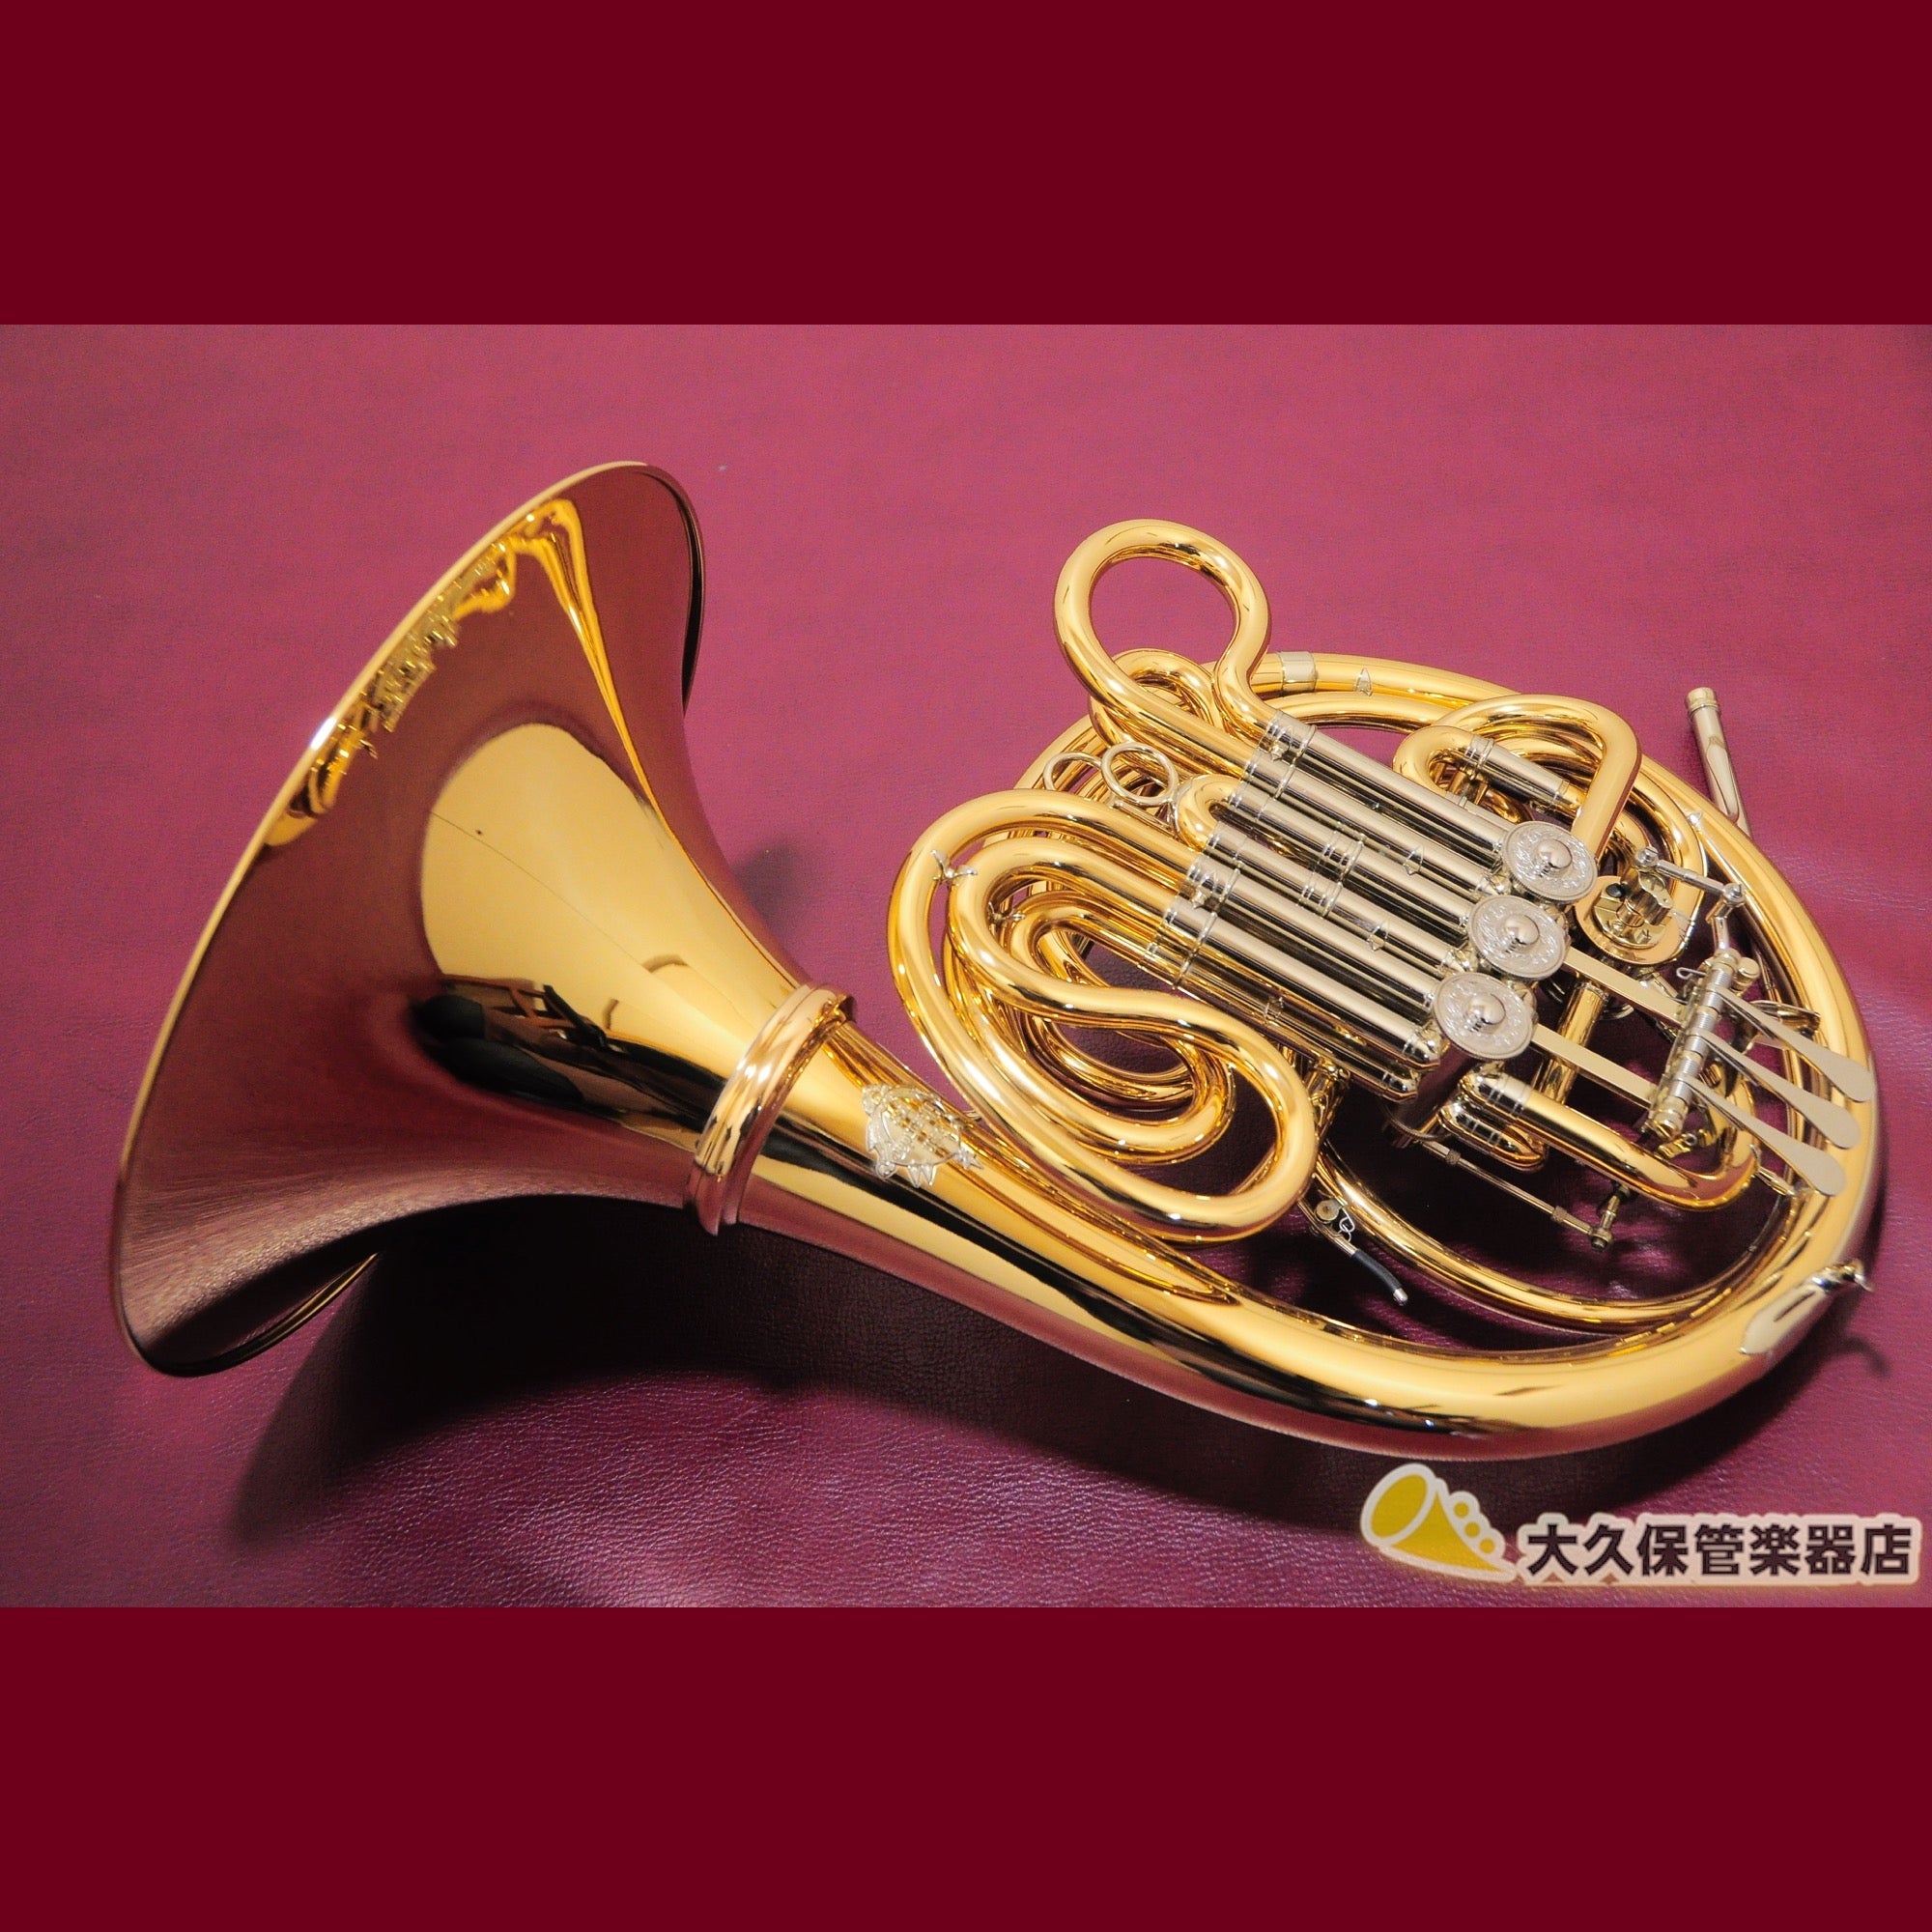 アレキサンダー103用 ホルンハードケース - 管楽器・吹奏楽器